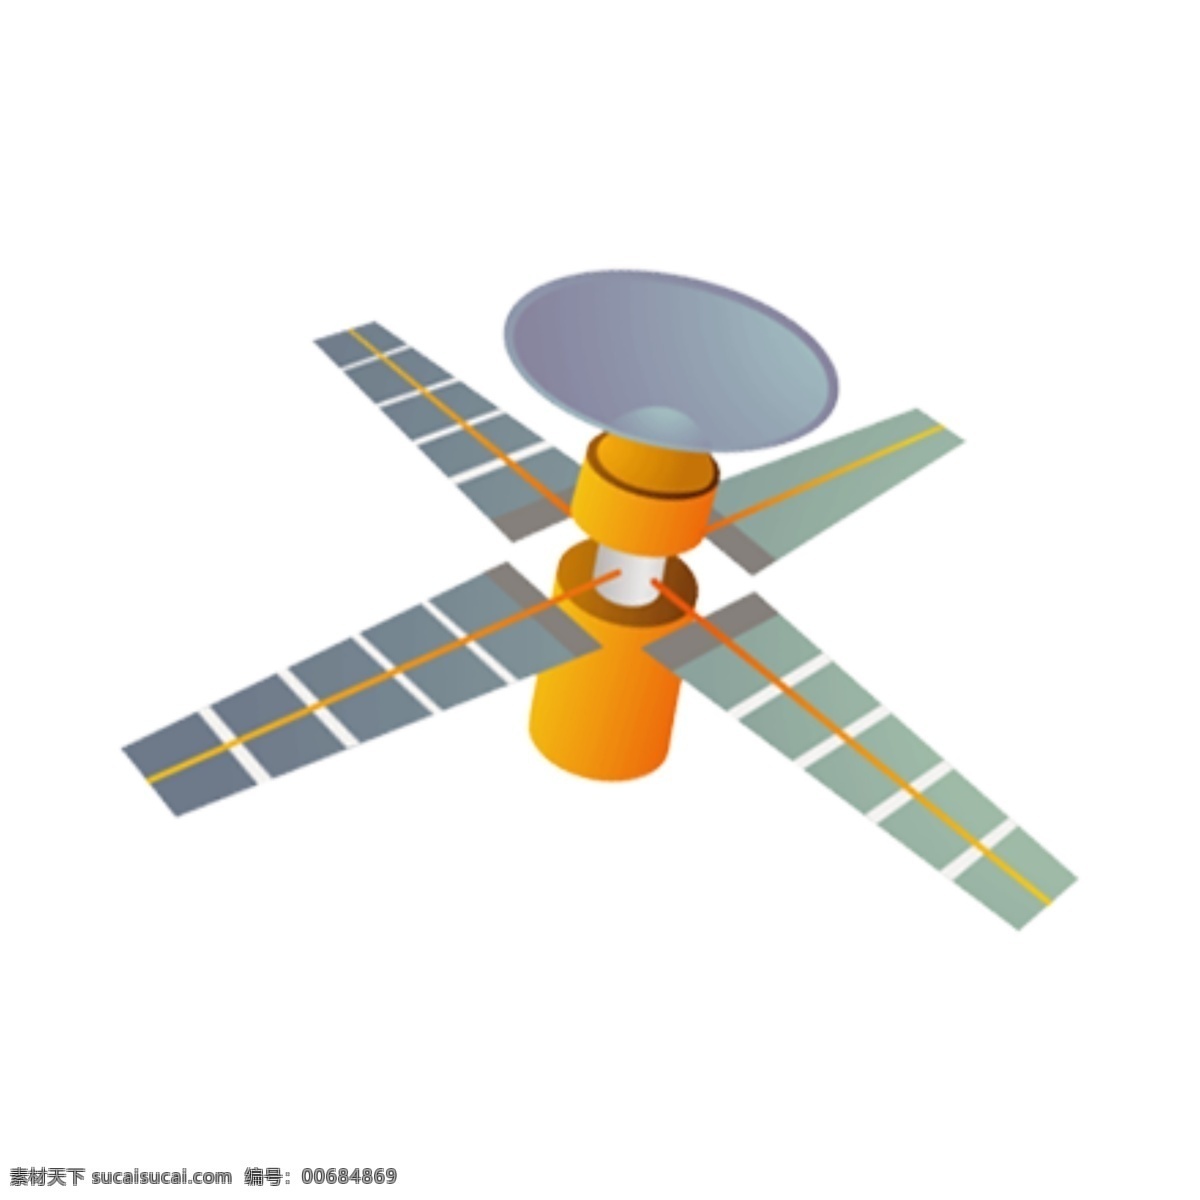 卫星图片 ui 标识 标志 矢量 简约 扁平 卫星 空间站 宇宙飞船 人造卫星 军用卫星 民用卫星 雷达